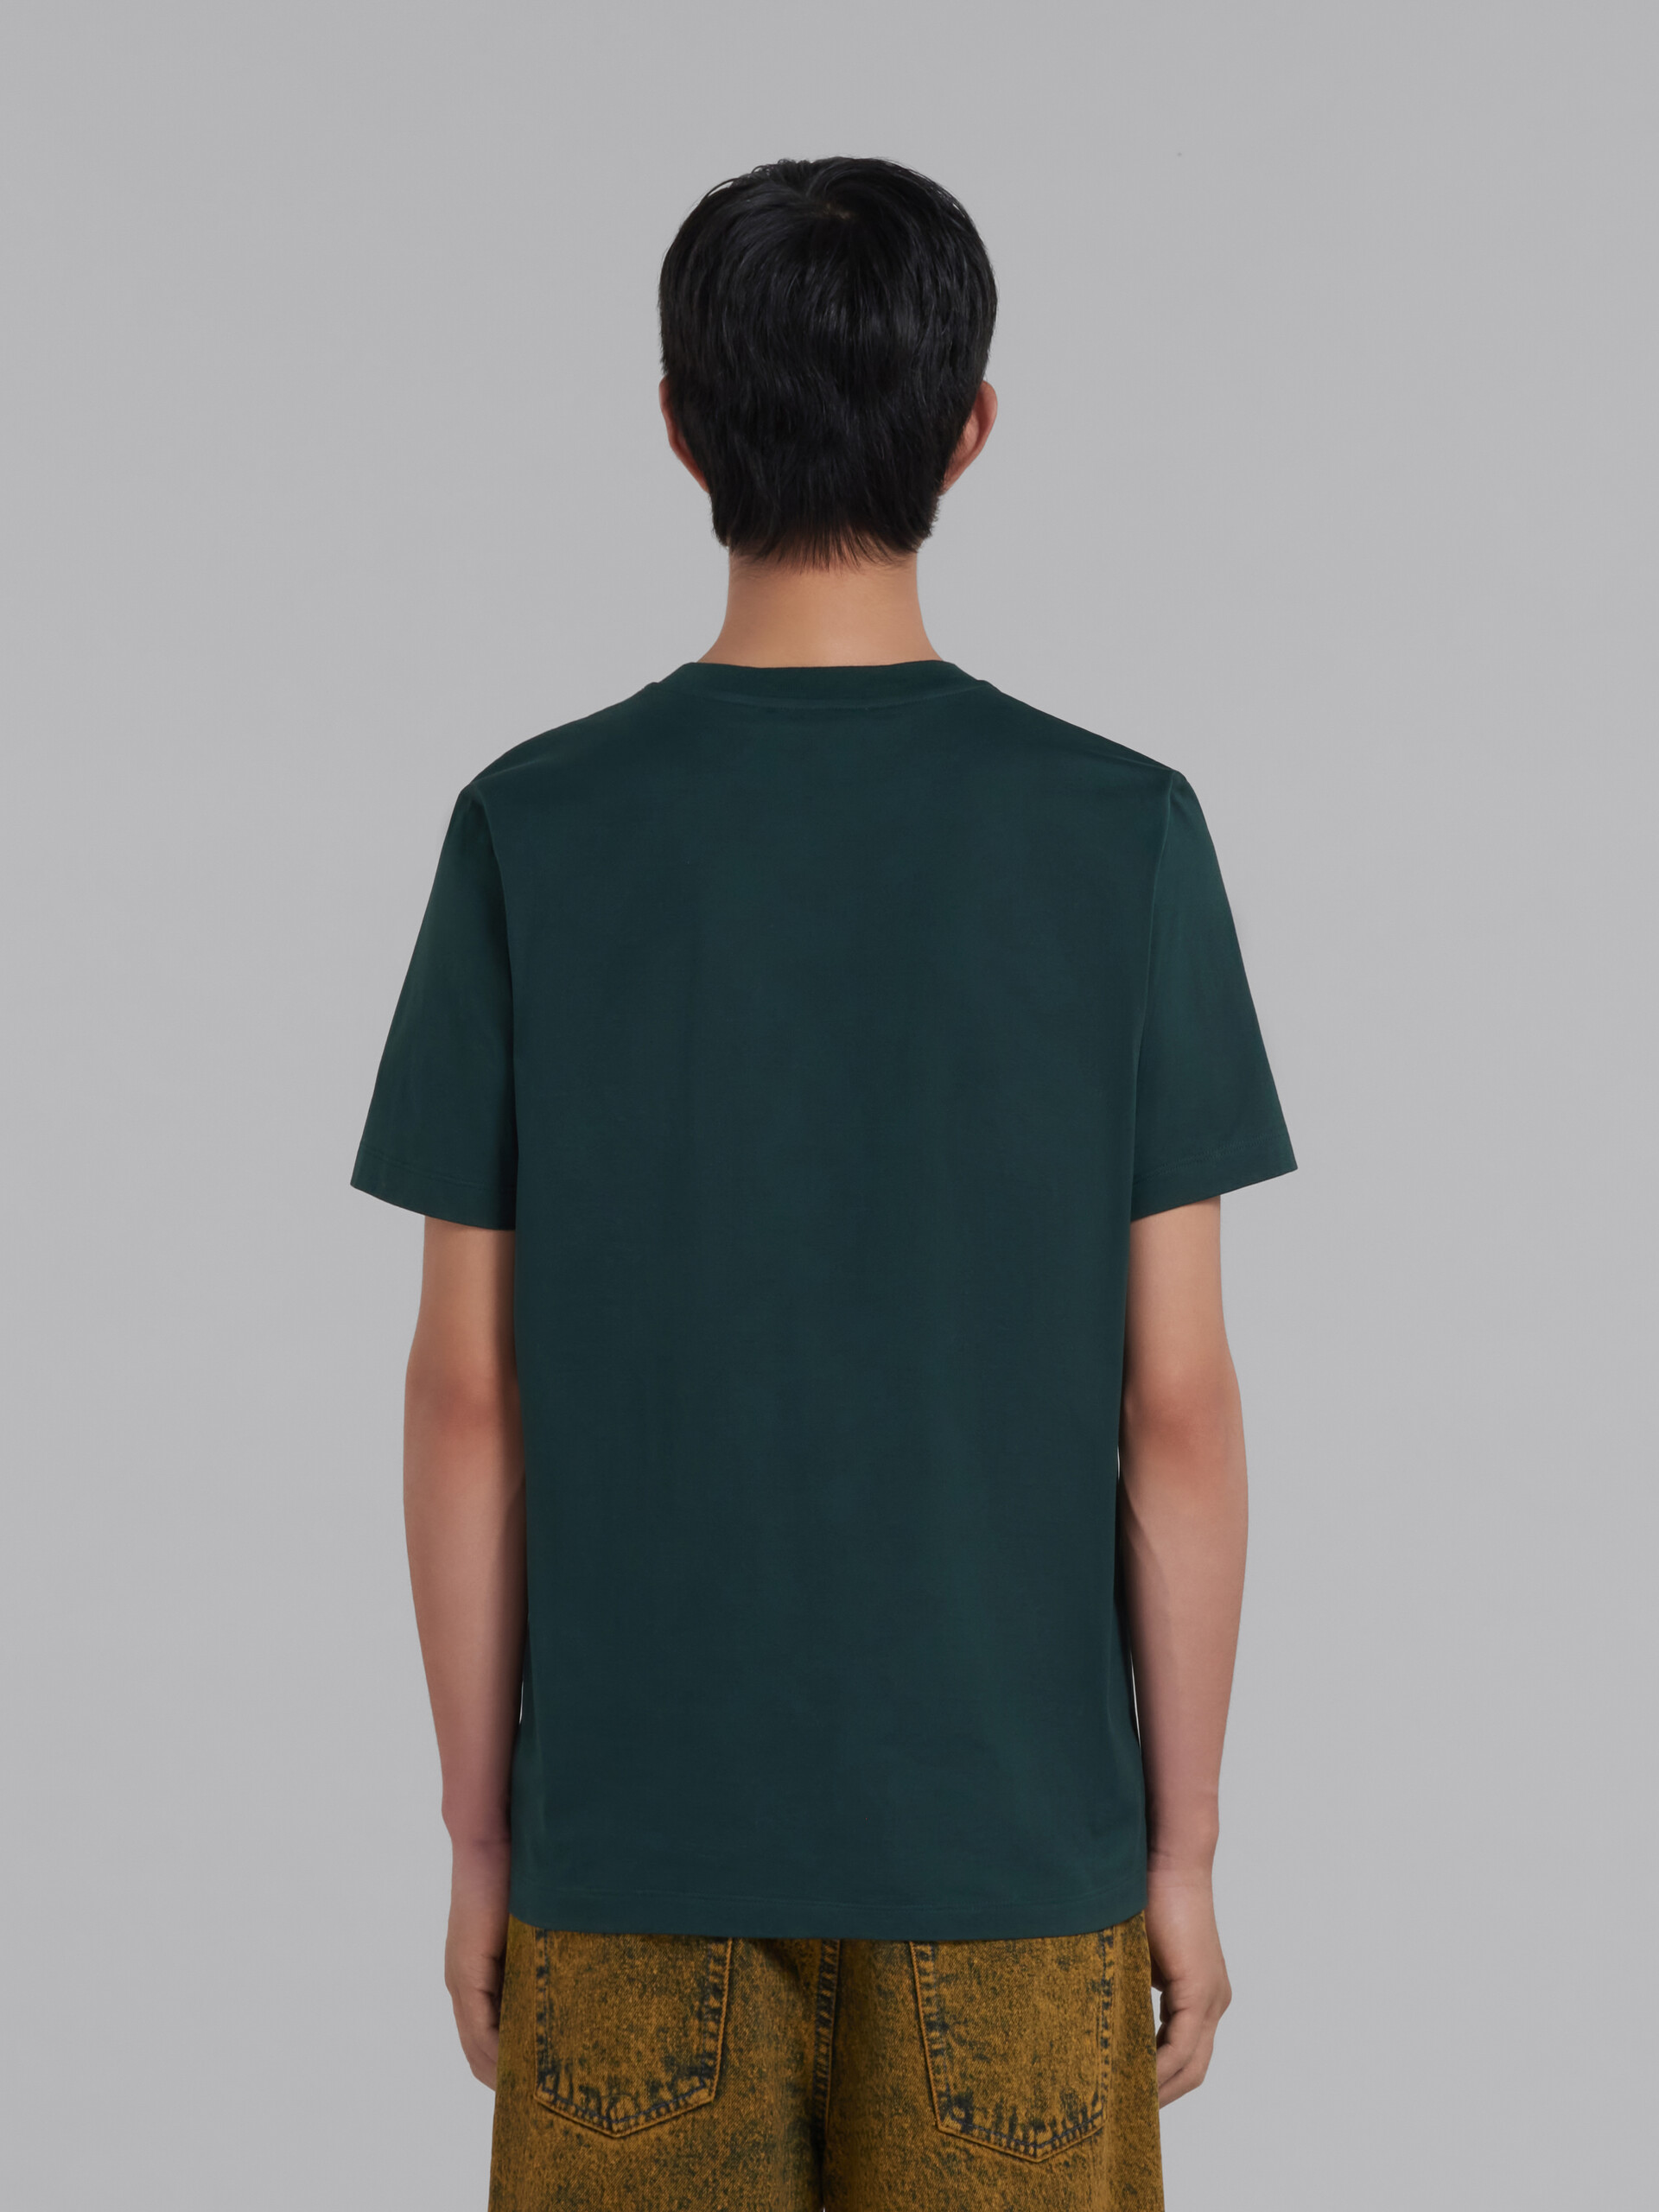 グリーン マルニパッチ オーガニックコットン Tシャツ - Tシャツ - Image 3